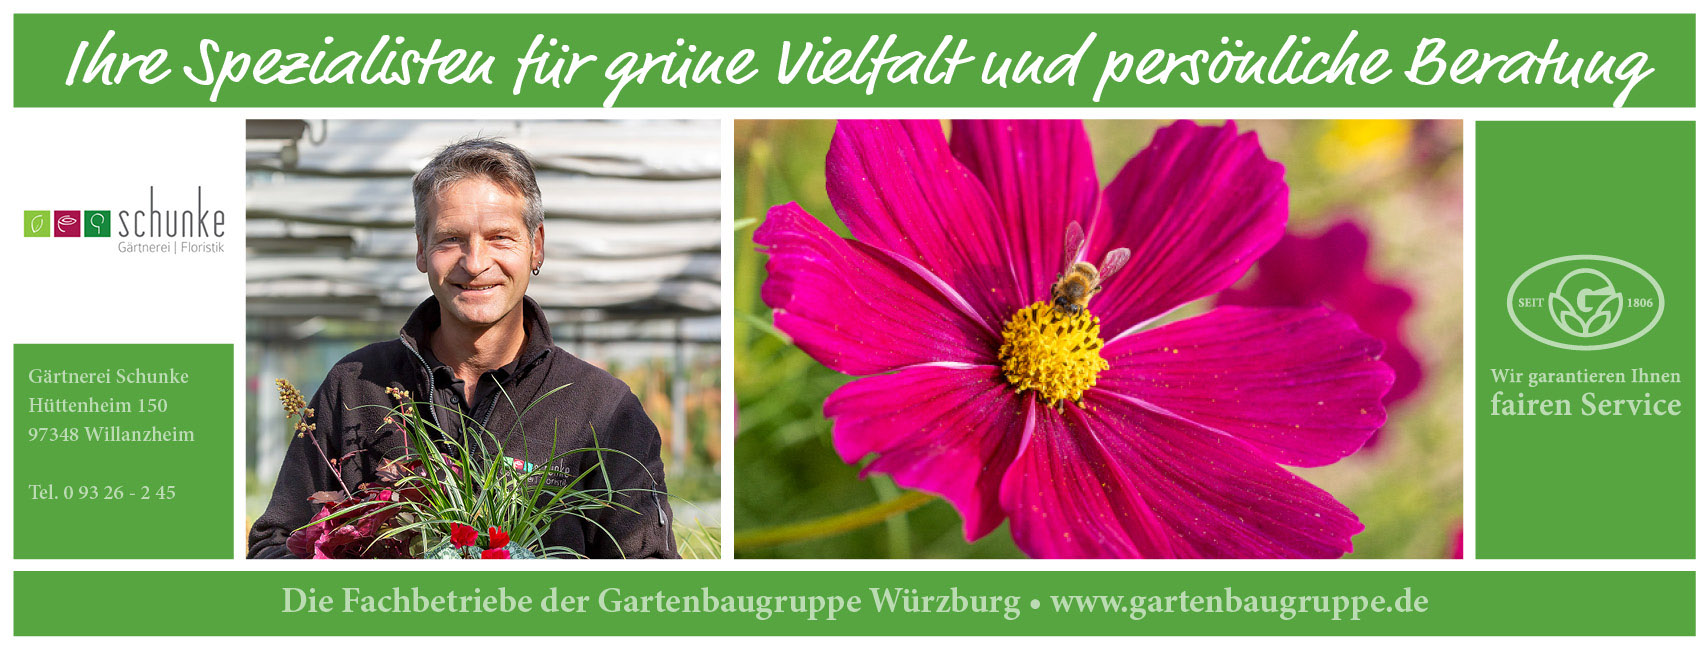 Gärterei Schunke – ein Fachbetrieb der Gartenbaugruppe Würz